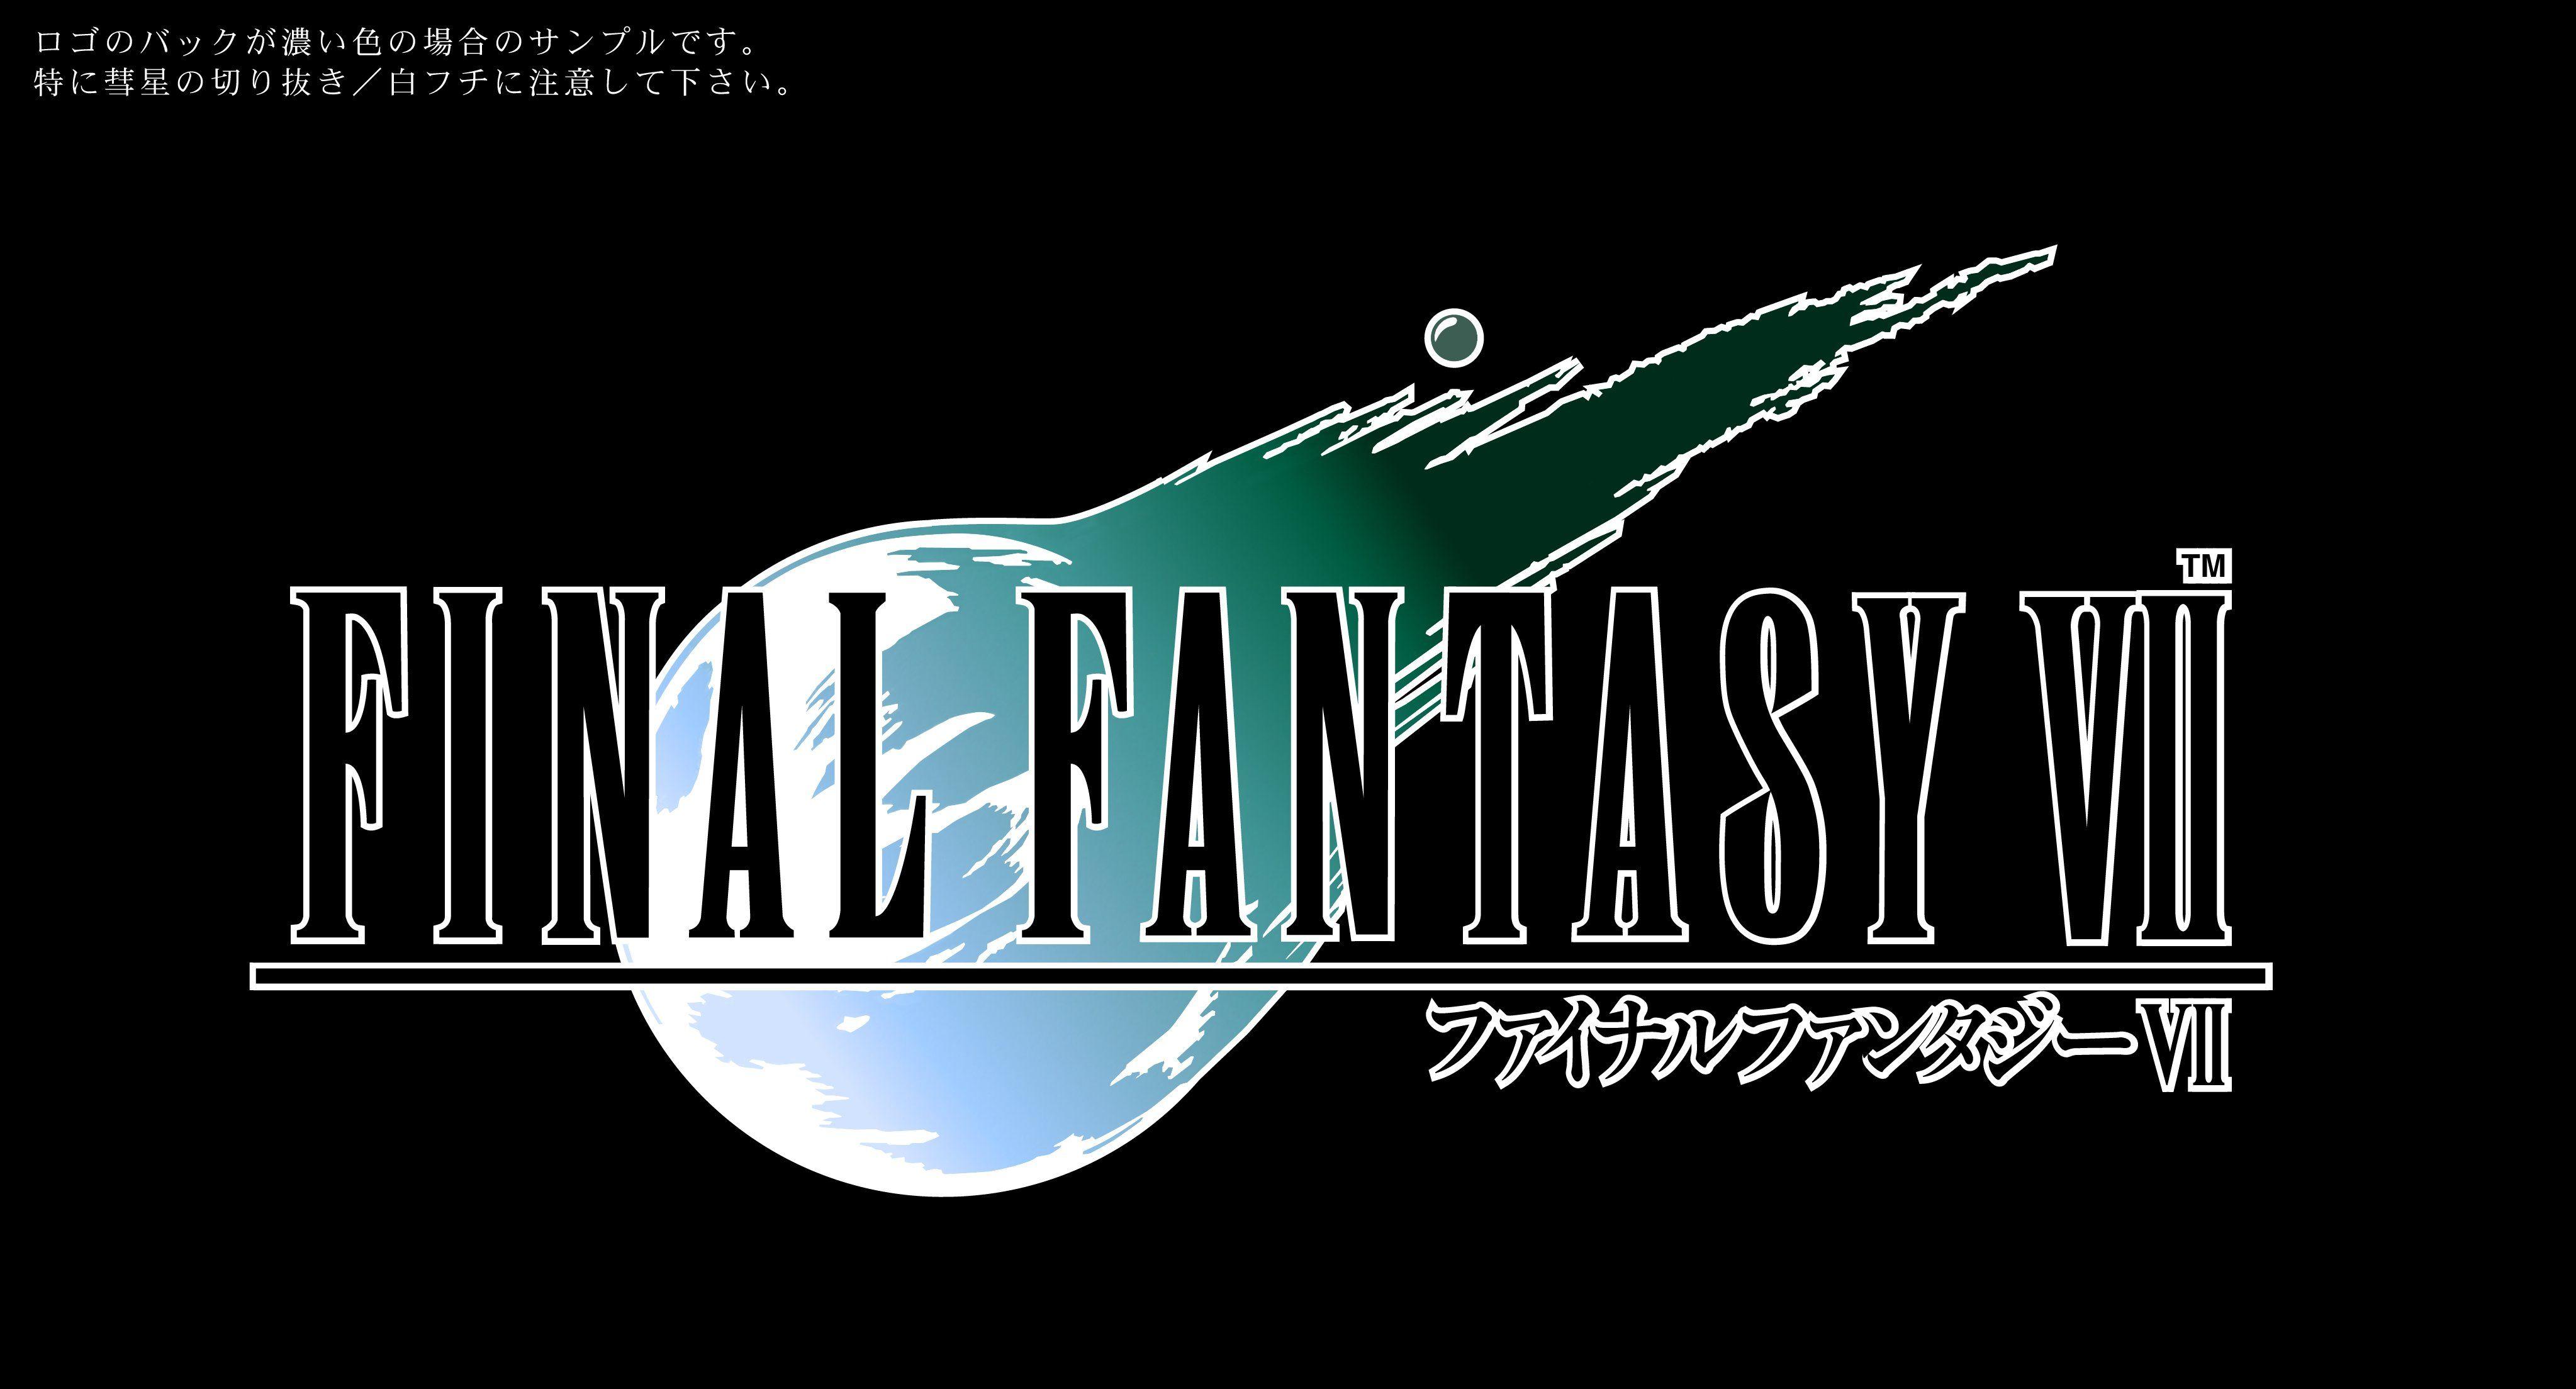 VII Logo - Final Fantasy VII (1997) promotional art - MobyGames